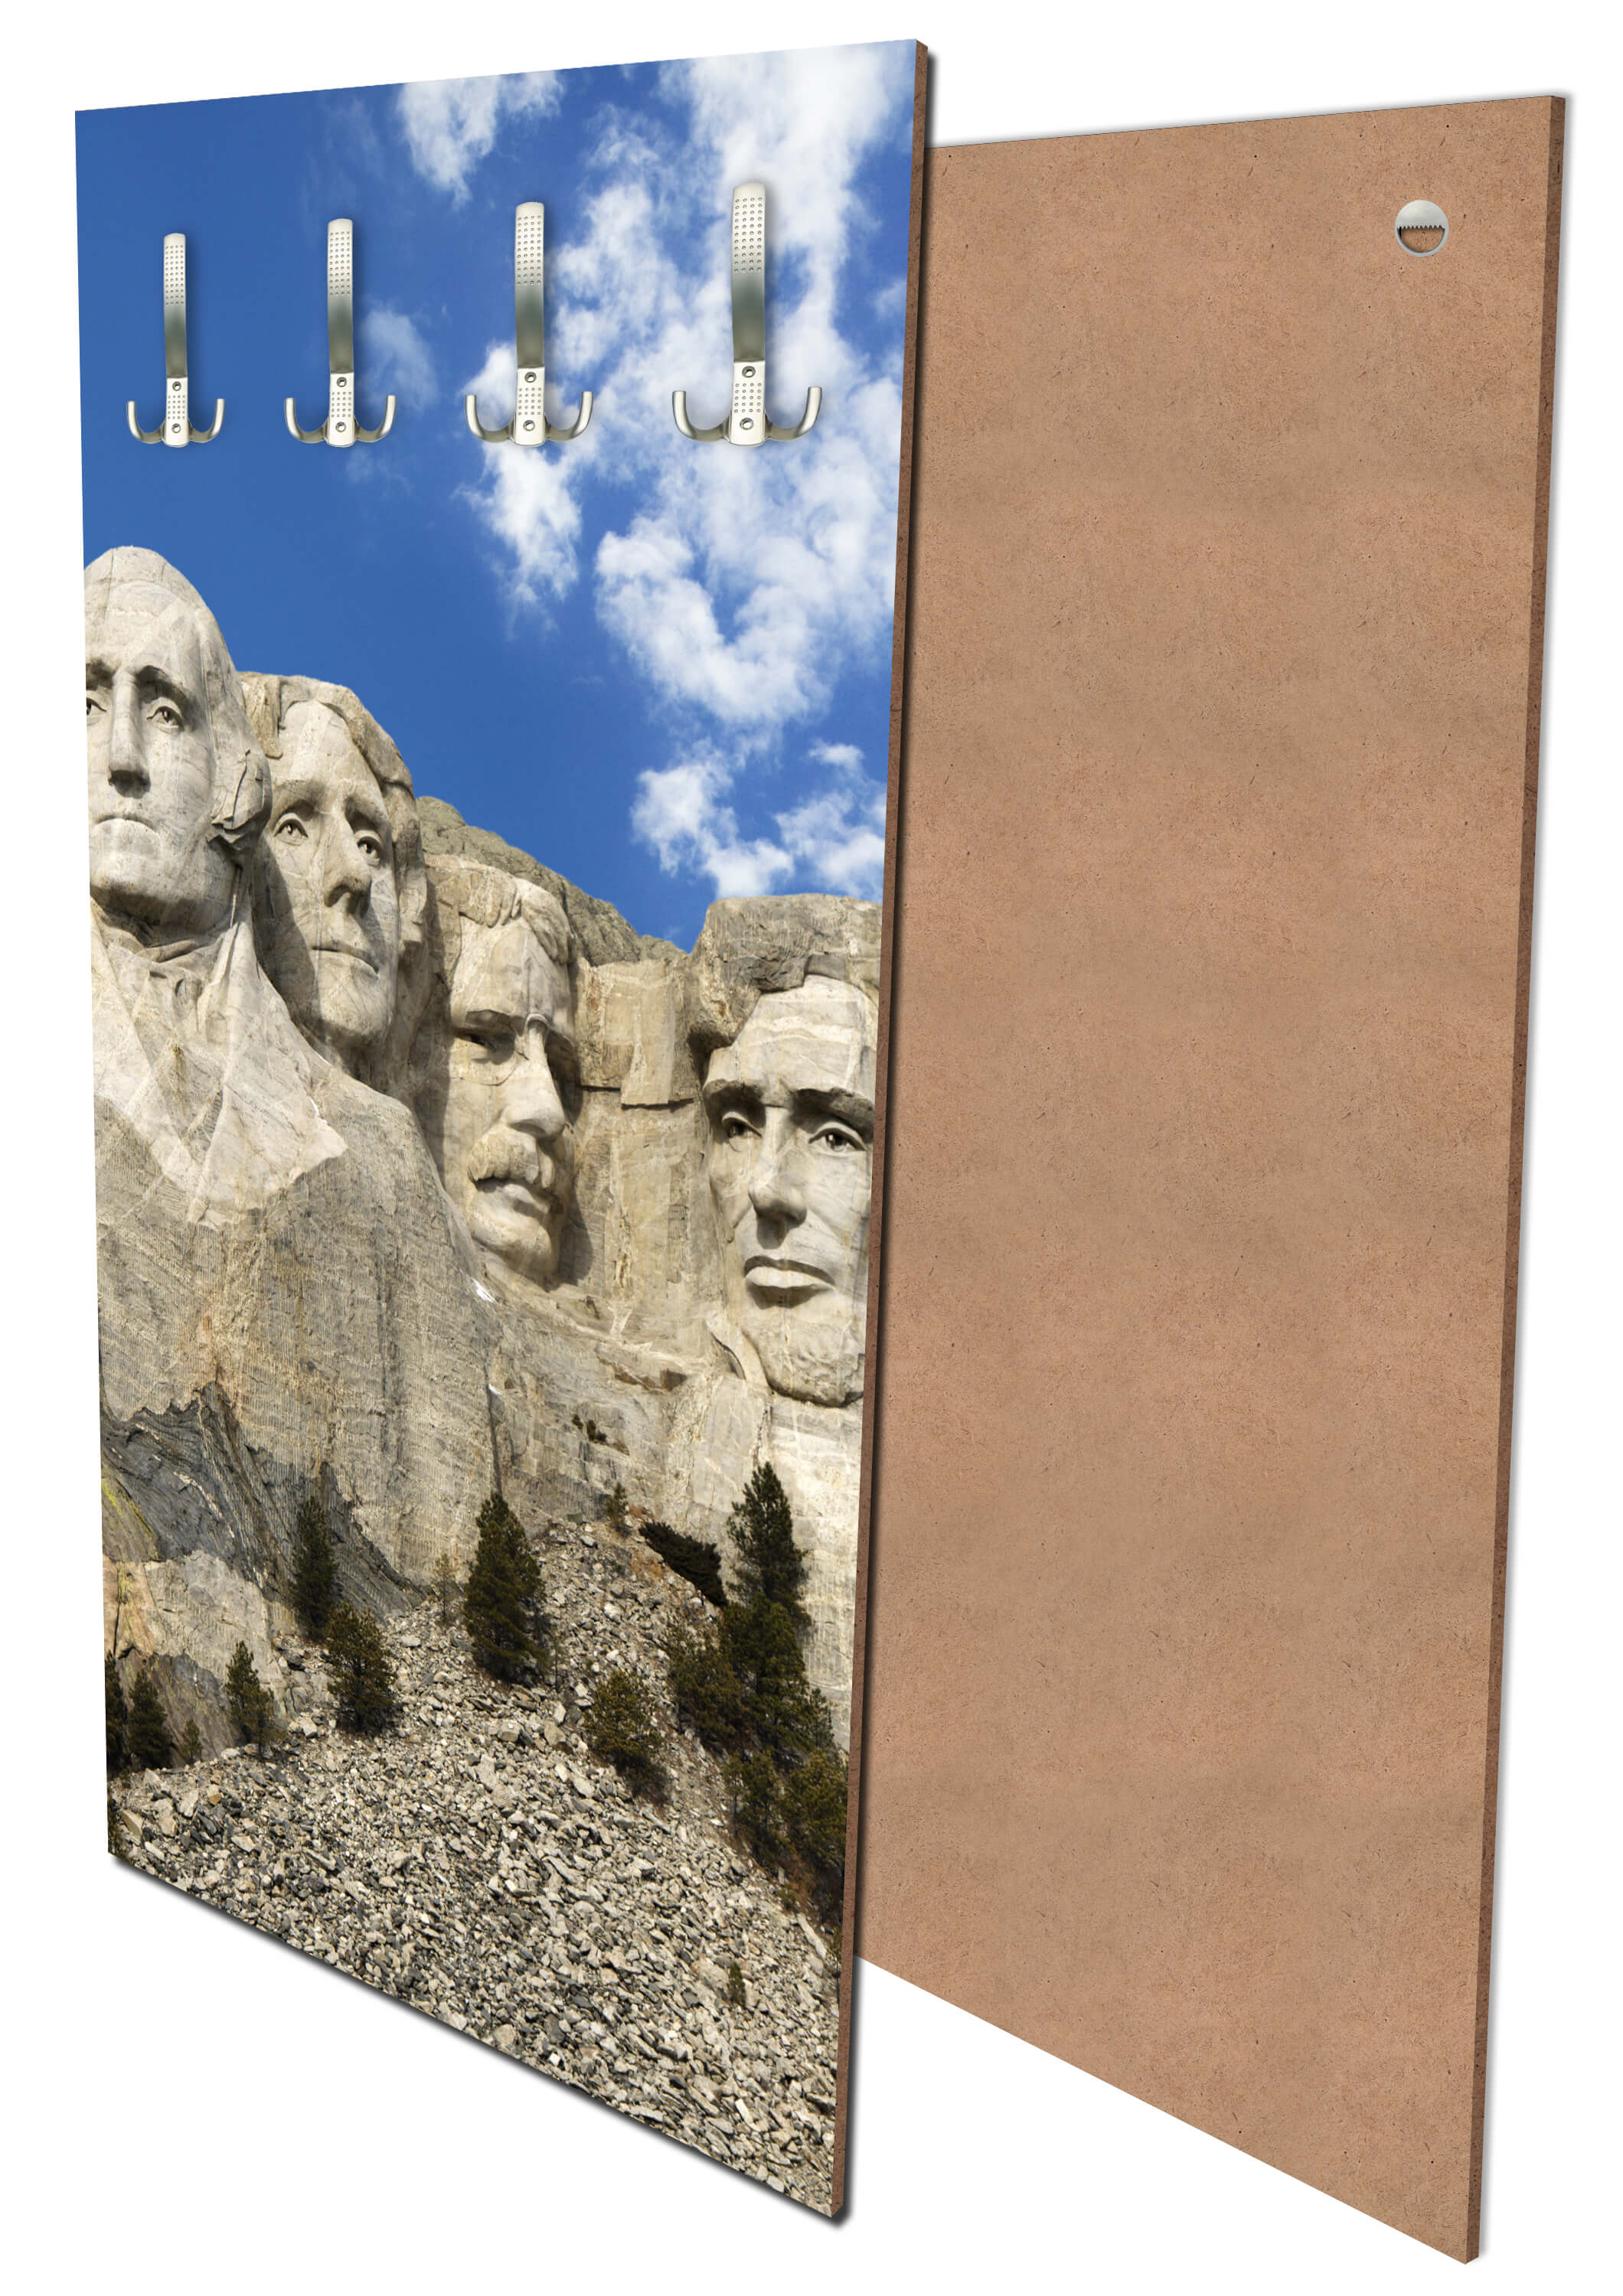 Garderobe Mount Rushmore Amerika M0250 entdecken - Bild 1